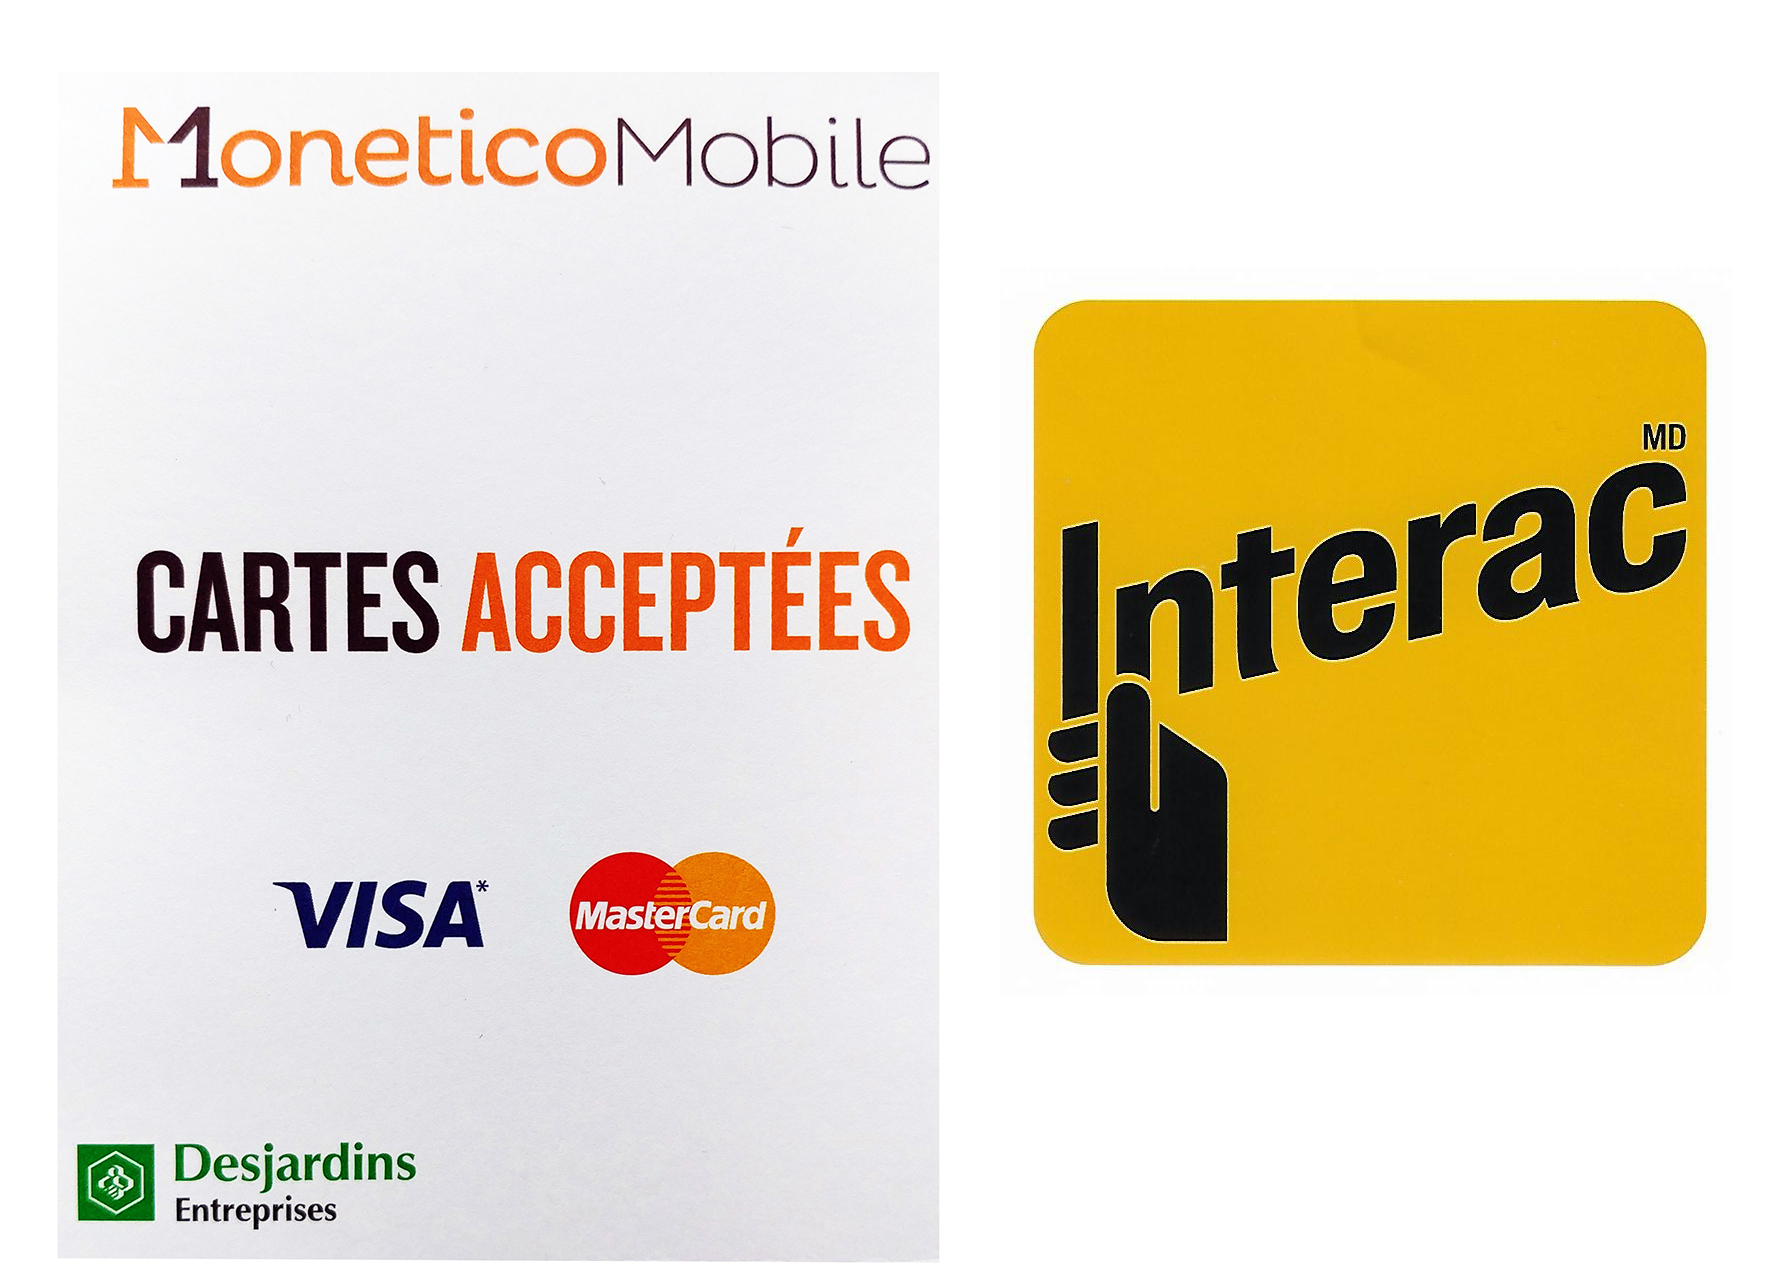 Paiements par PayPass,
Cartes Visa, Master Card & Interac
sont Acceptées.